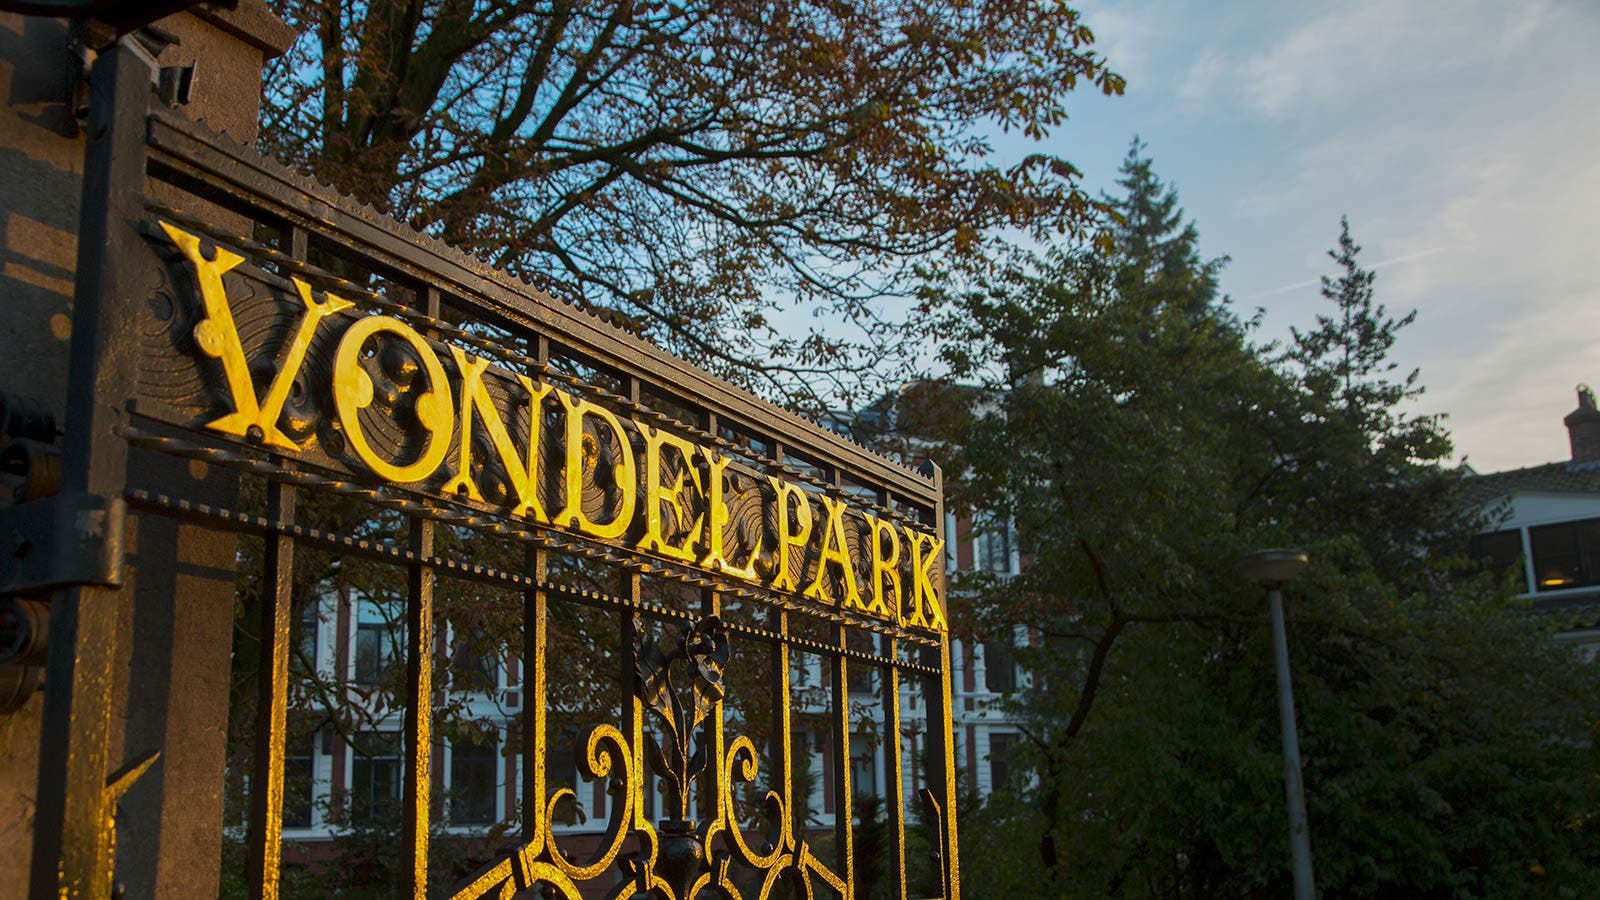 Vondelpark is Amsterdam's most famous park